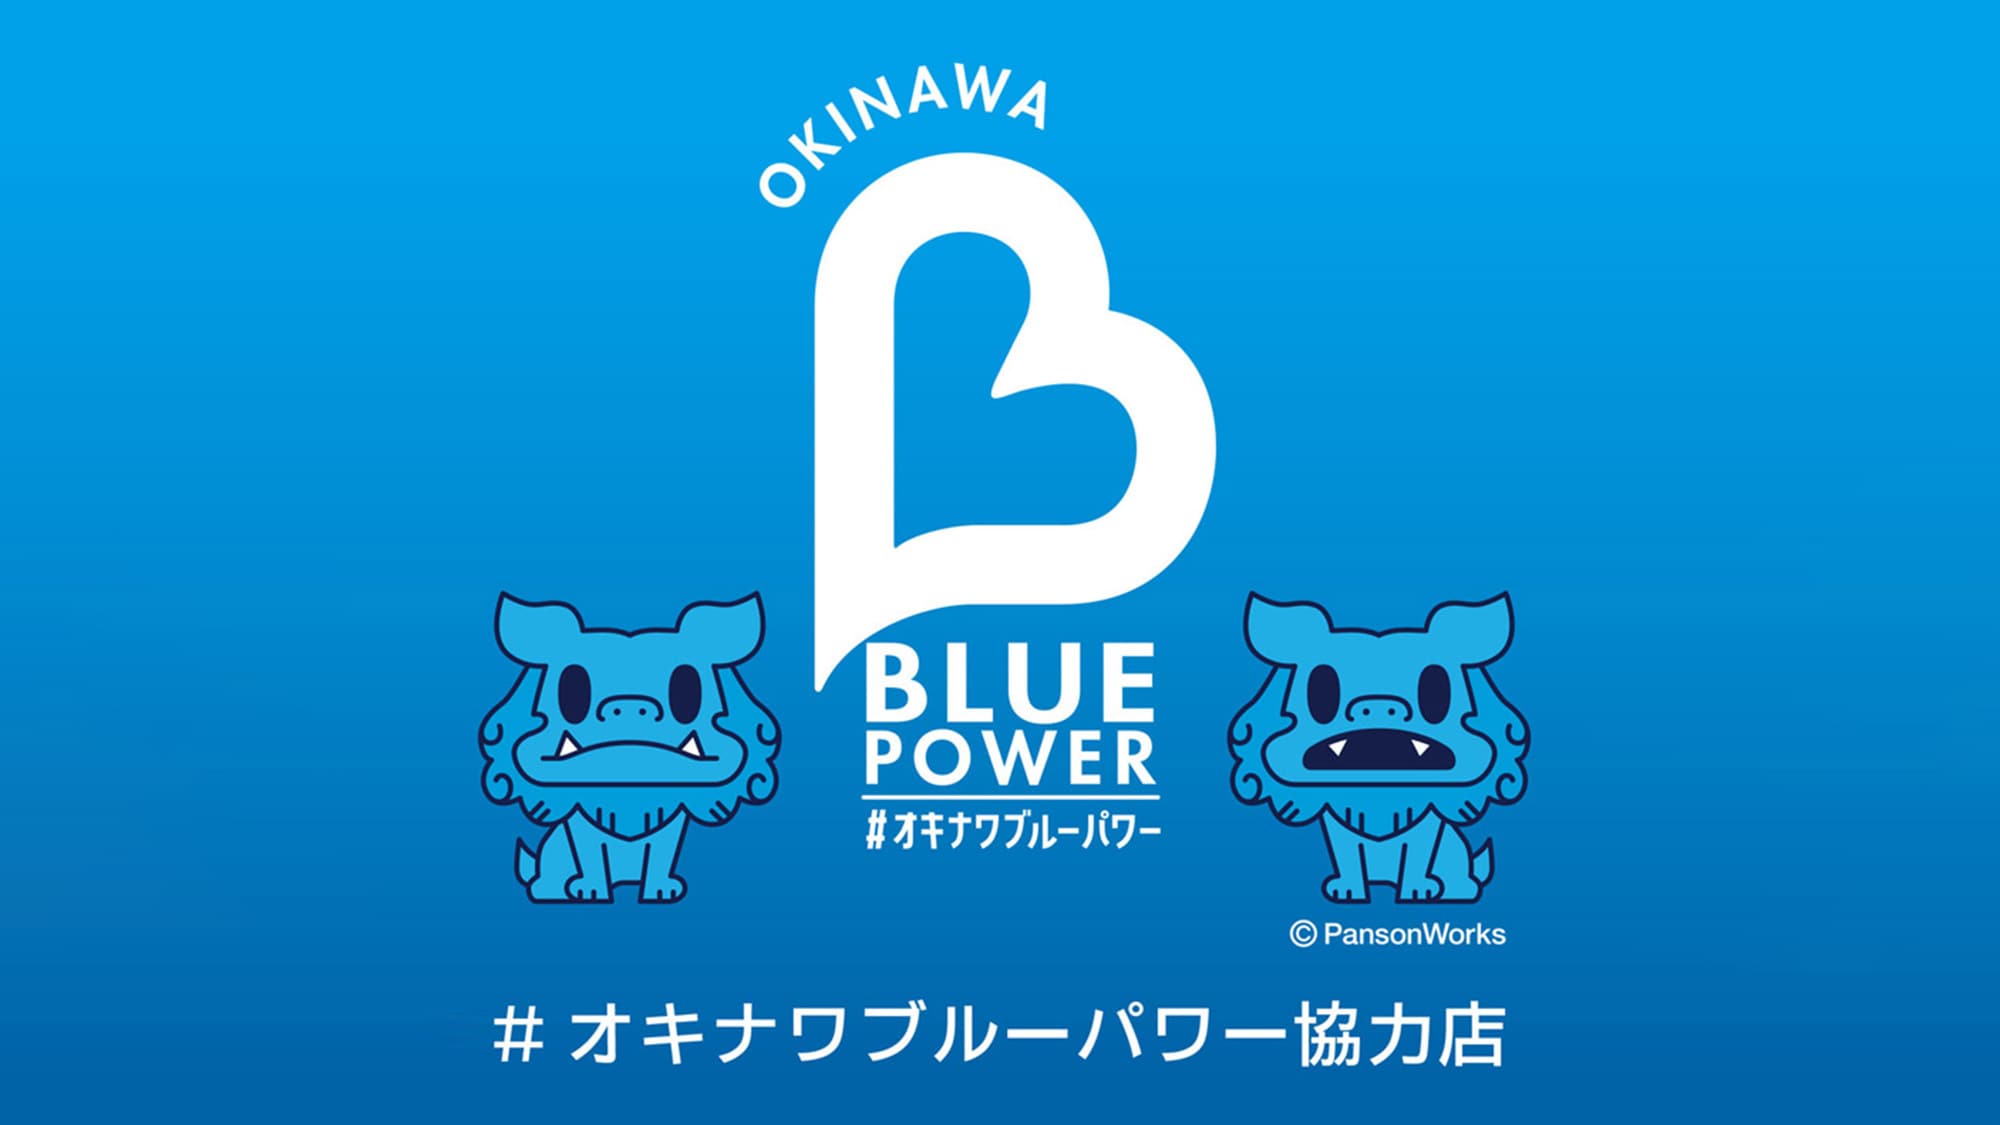 Okinawa Blue Power Cooperating Store